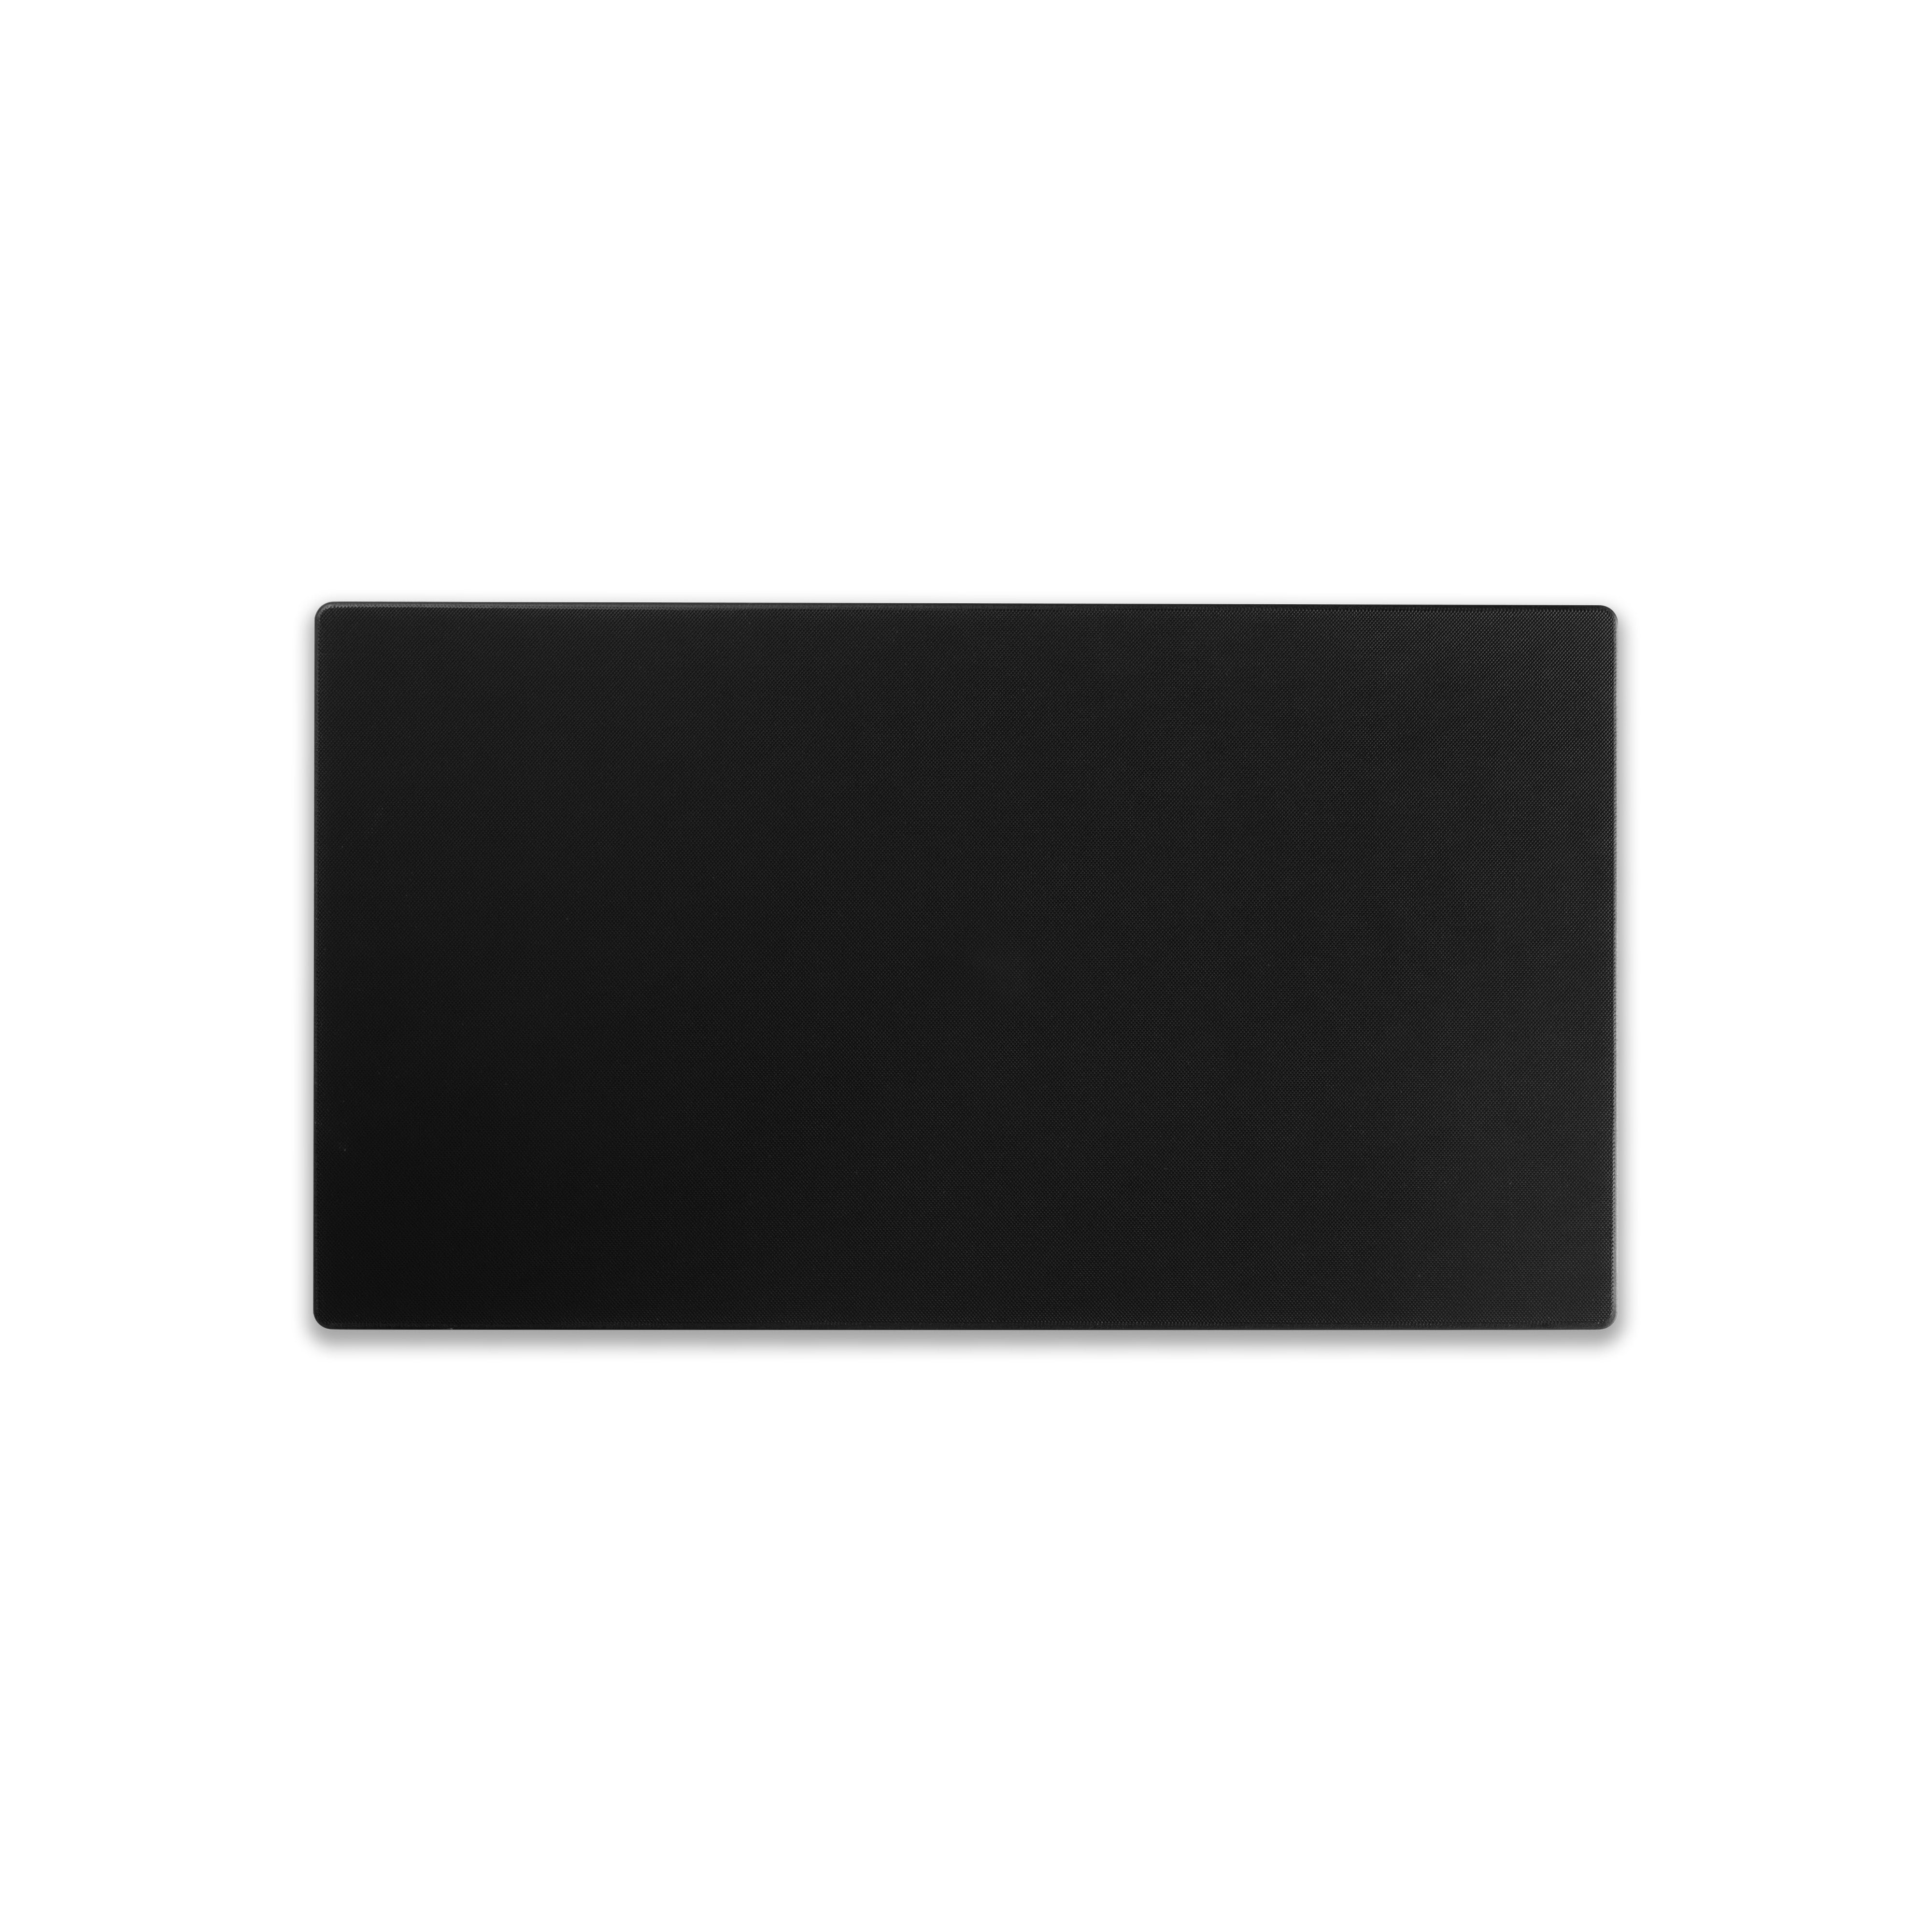 Hasegawa Pro-PE Lite Black Cutting Board